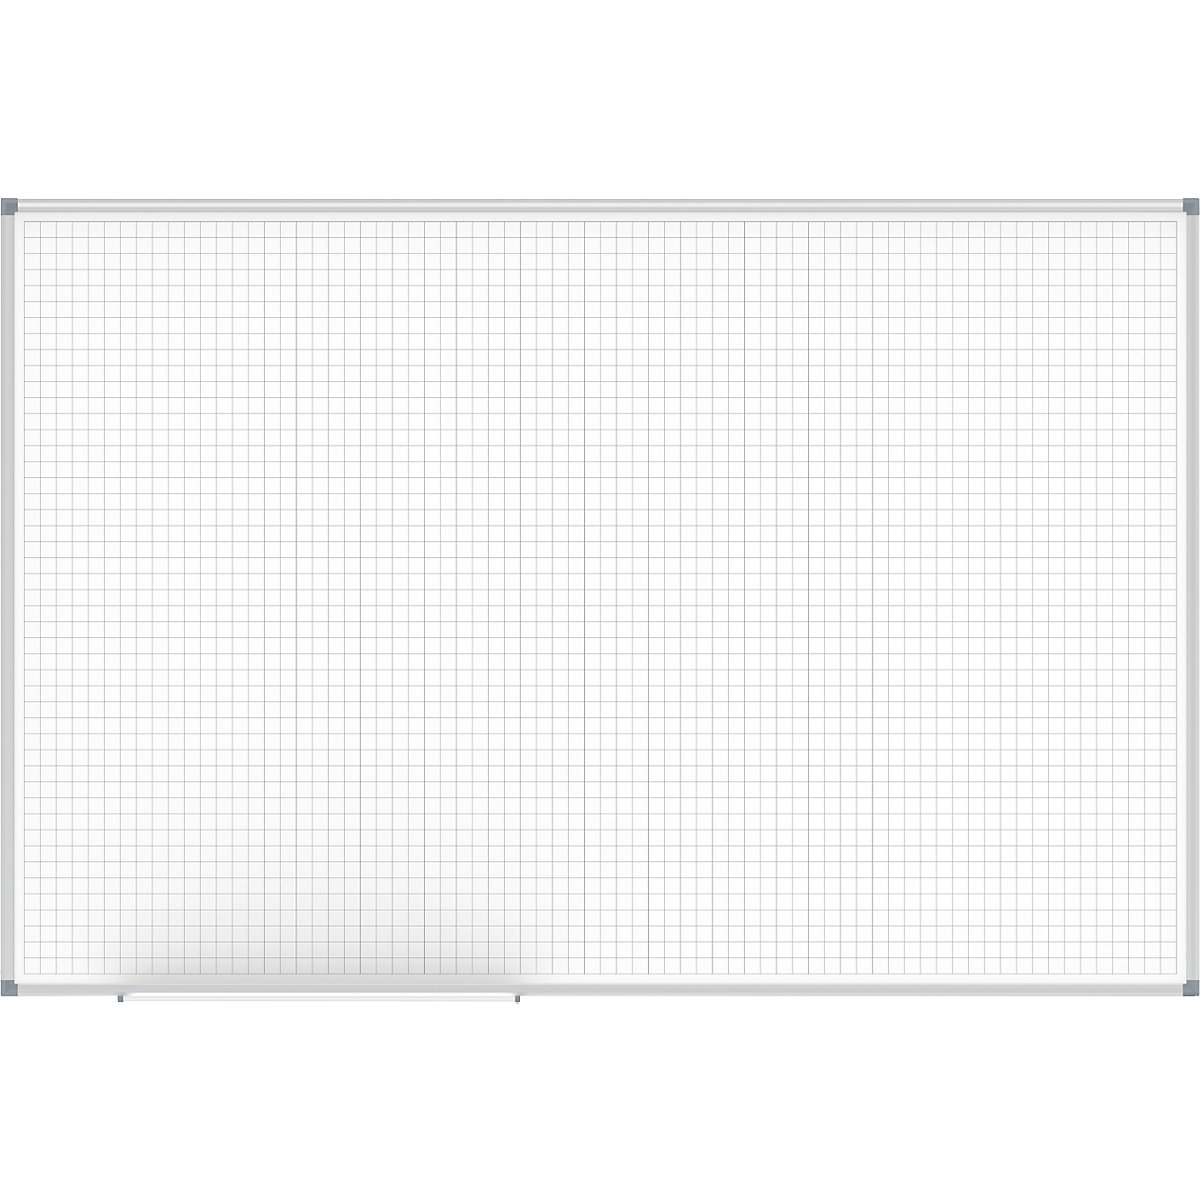 Tableau quadrillé MAULstandard, blanc – MAUL, quadrillage 20 x 20 mm, l x h 1500 x 1000 mm-2